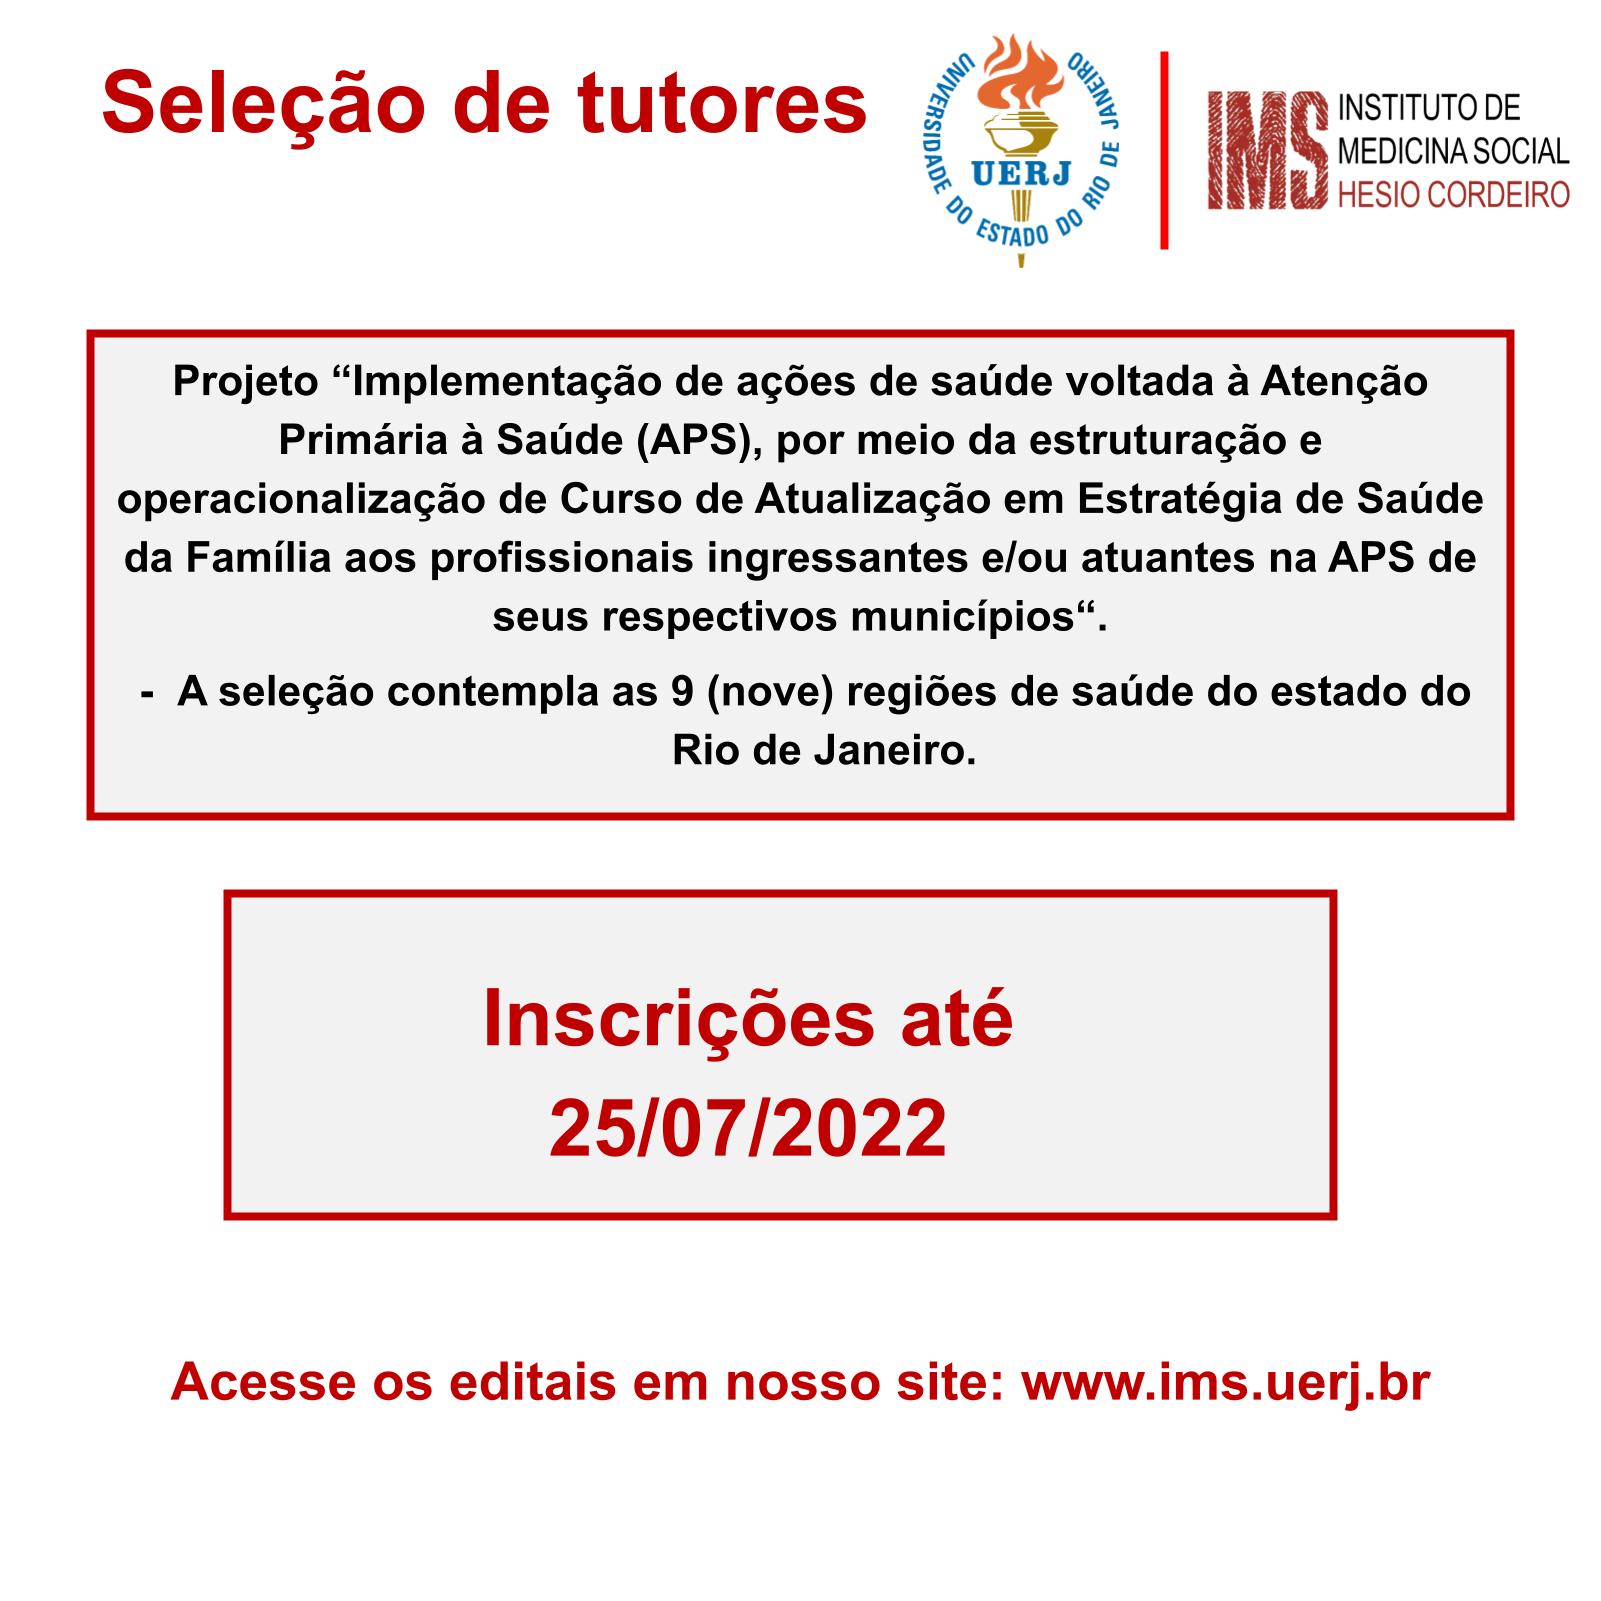 RESULTADO – Seleção de tutores: projeto “Implementação de ações de saúde voltada à Atenção Primária à Saúde (APS)”